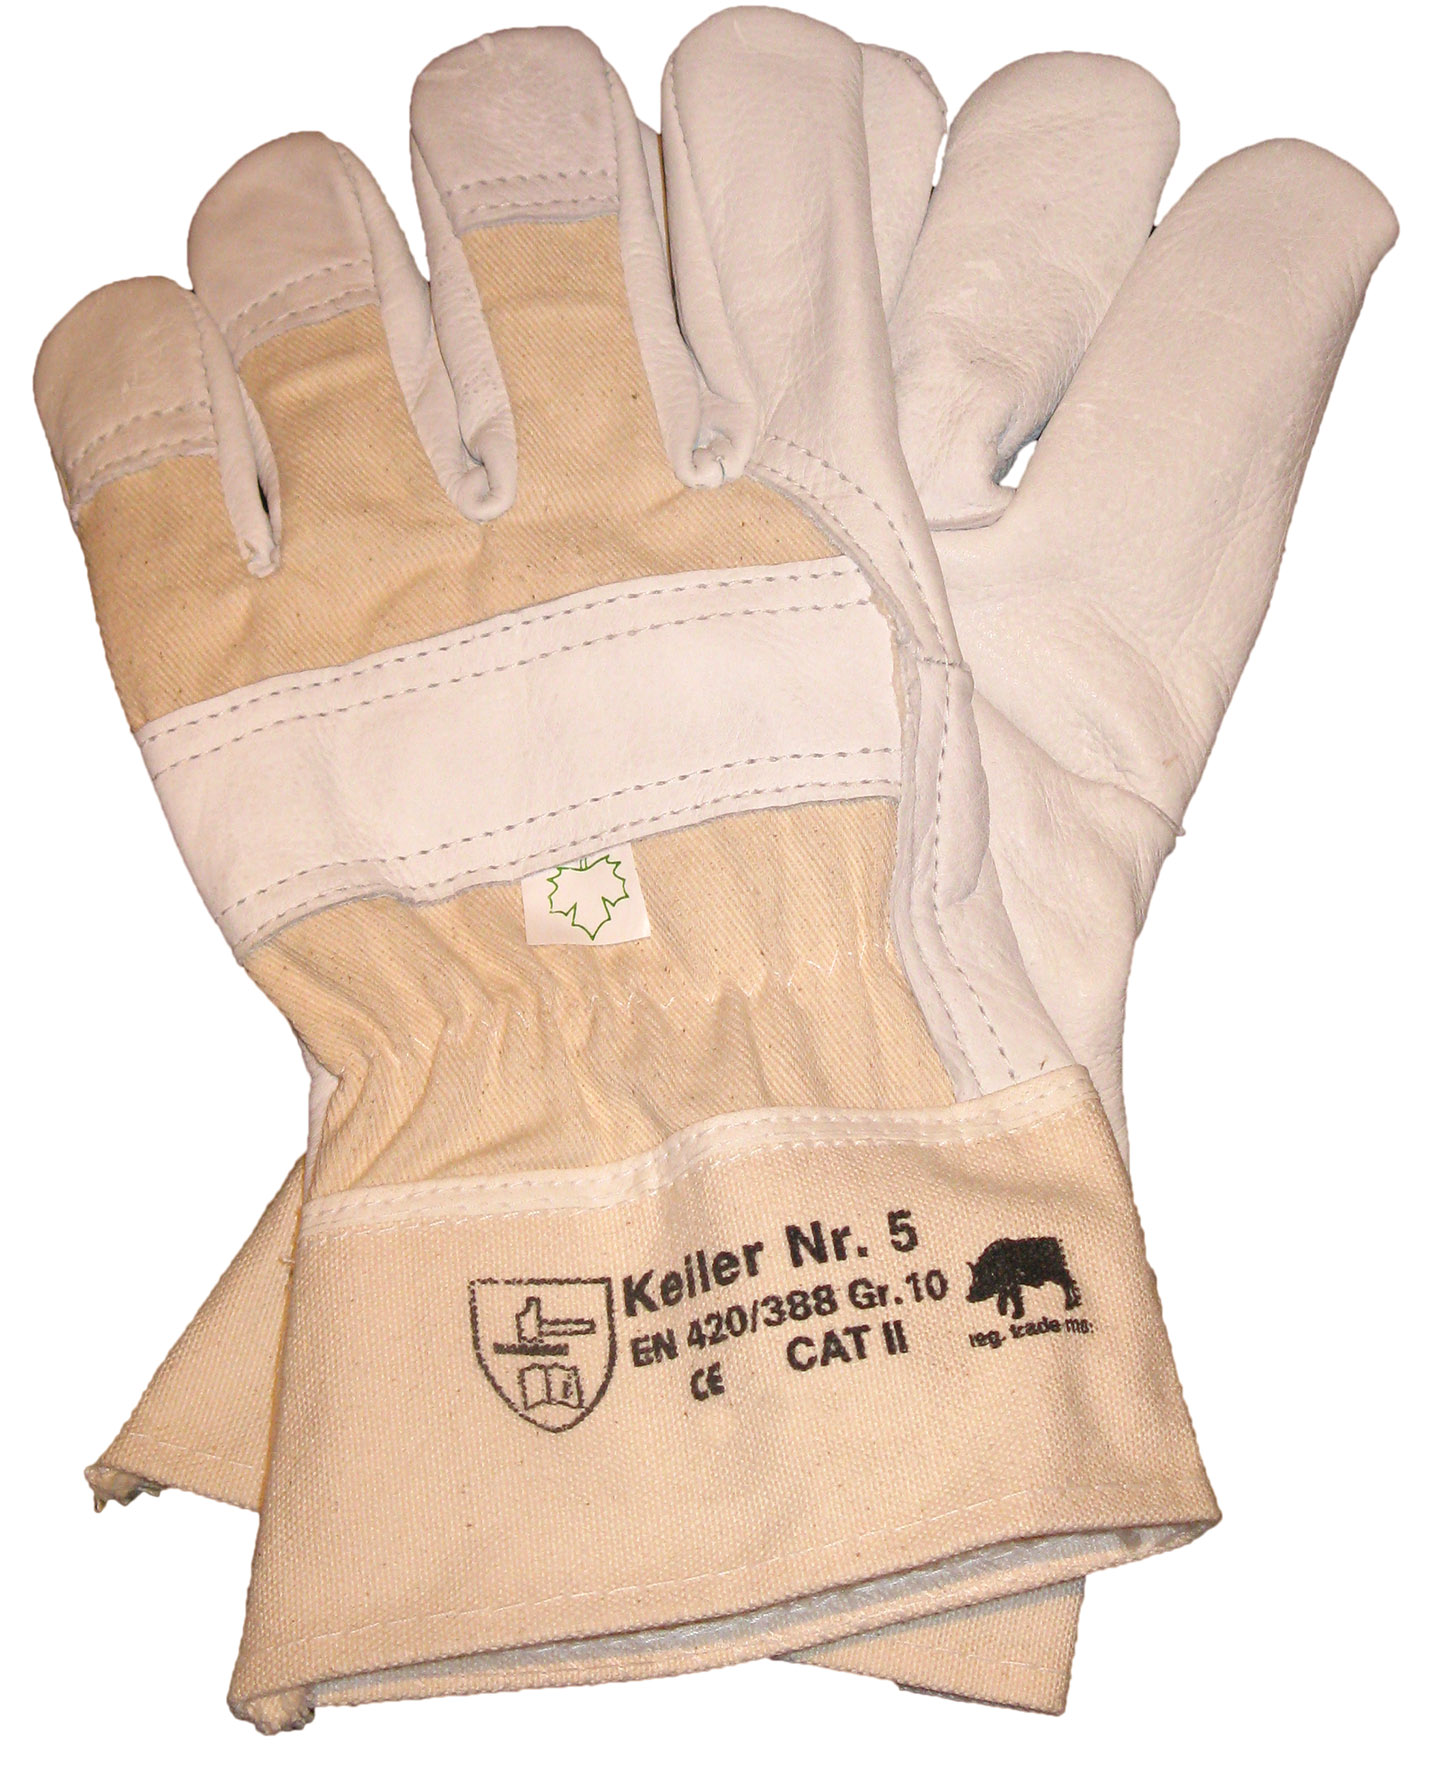 Keiler Nr. 5 - Fünffinger Schutzhandschuh aus Rindnarbenleder für viele Einsatzgebiete